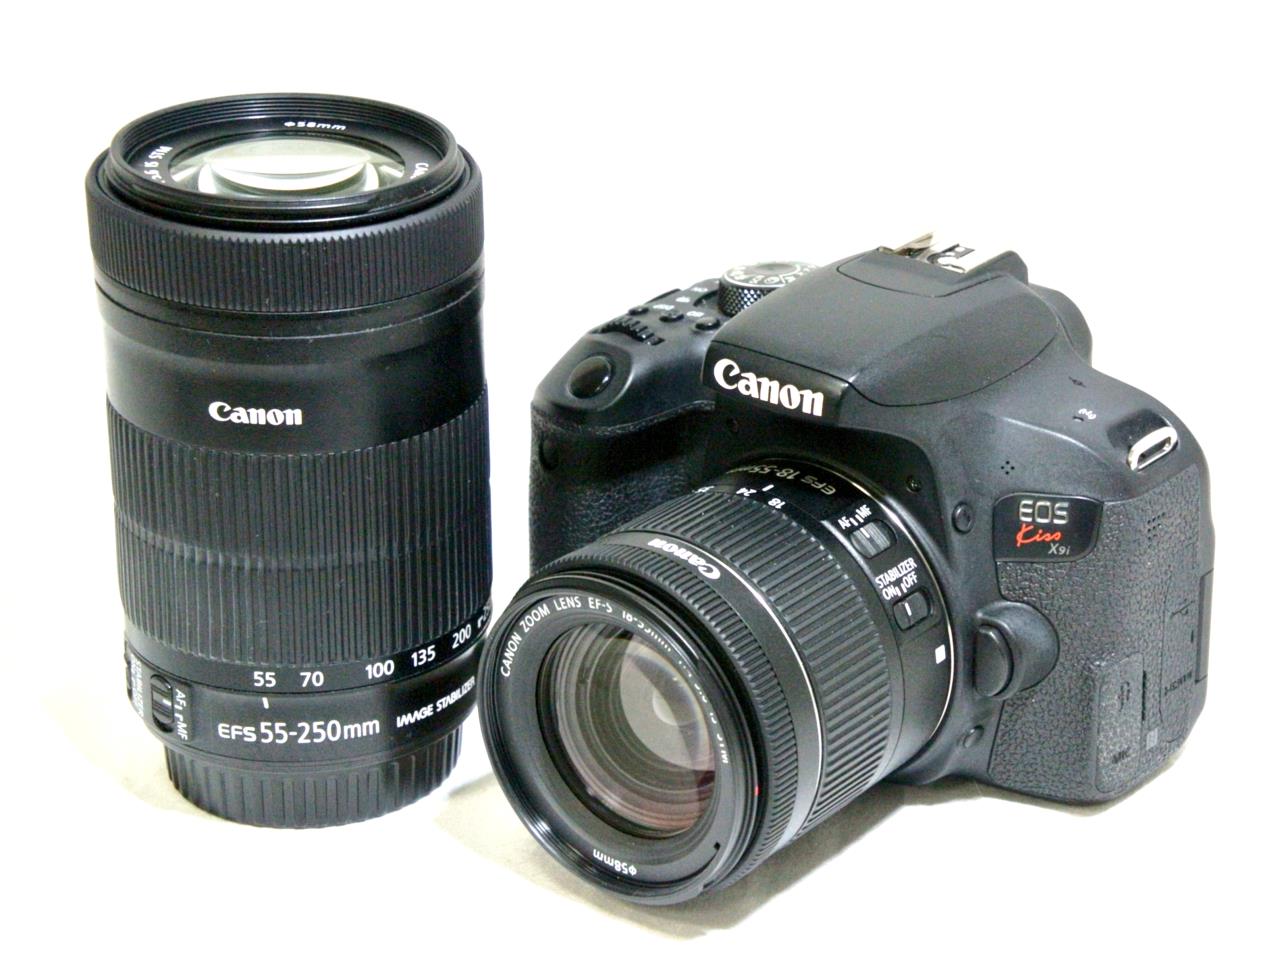 Canon EOS Kiss x9i ダブルズームキット付属品は画像の物が全てです